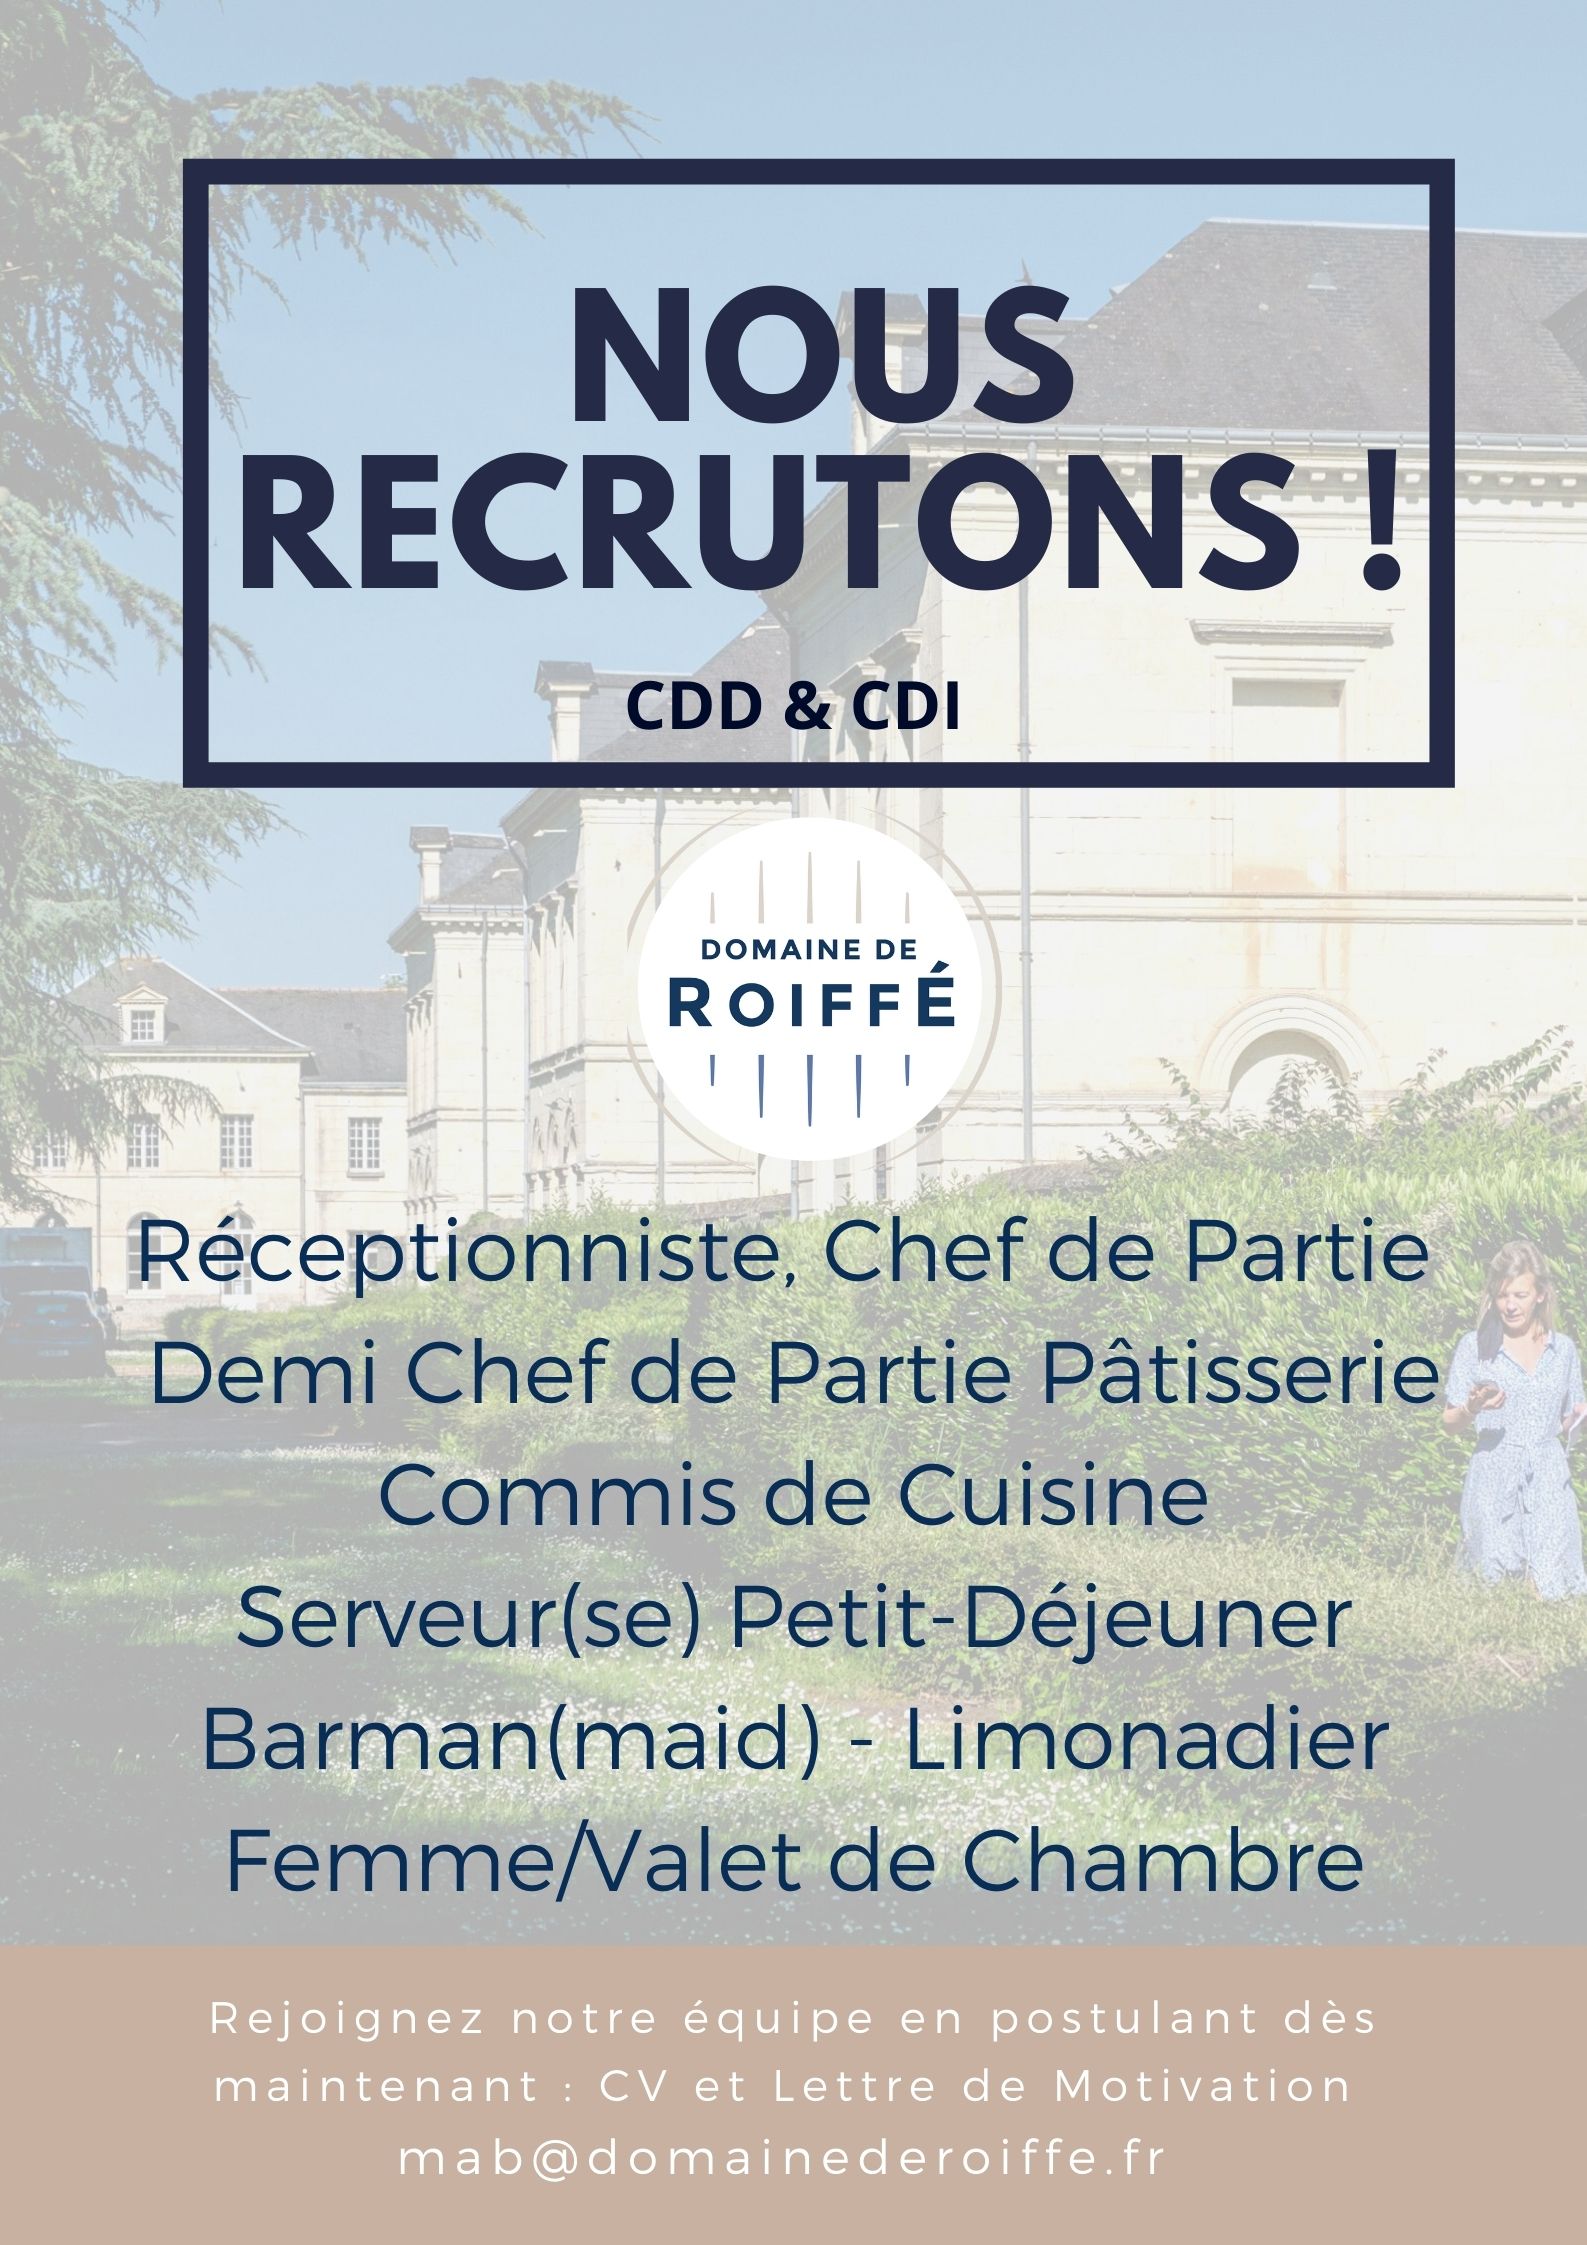 Job Offer at Domaine de Roiffé